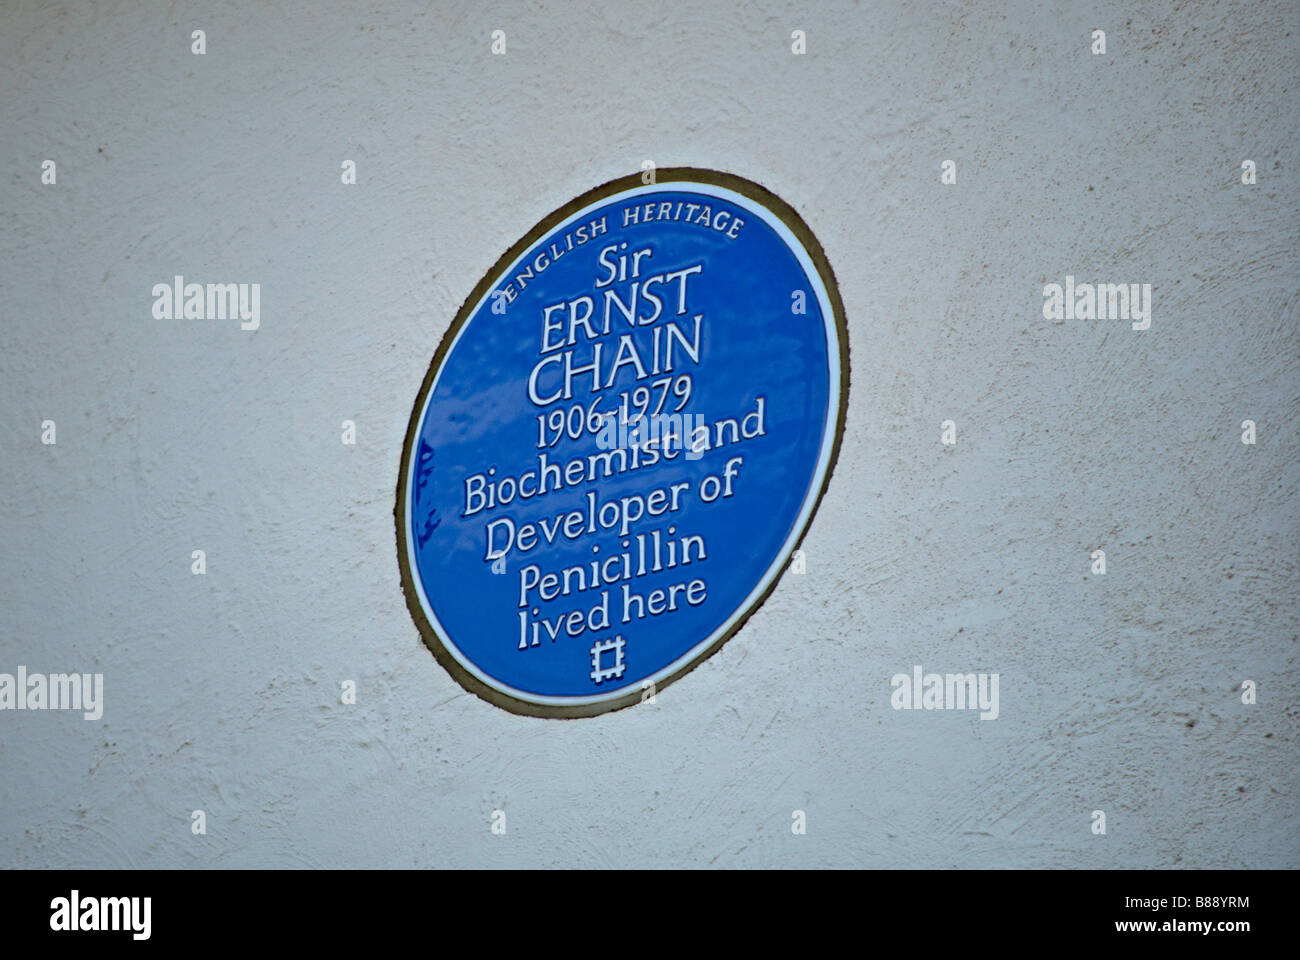 English Heritage targa blu segnando un ex casa di sir ernst catena, biochimico e sviluppatore di penicillina Foto Stock